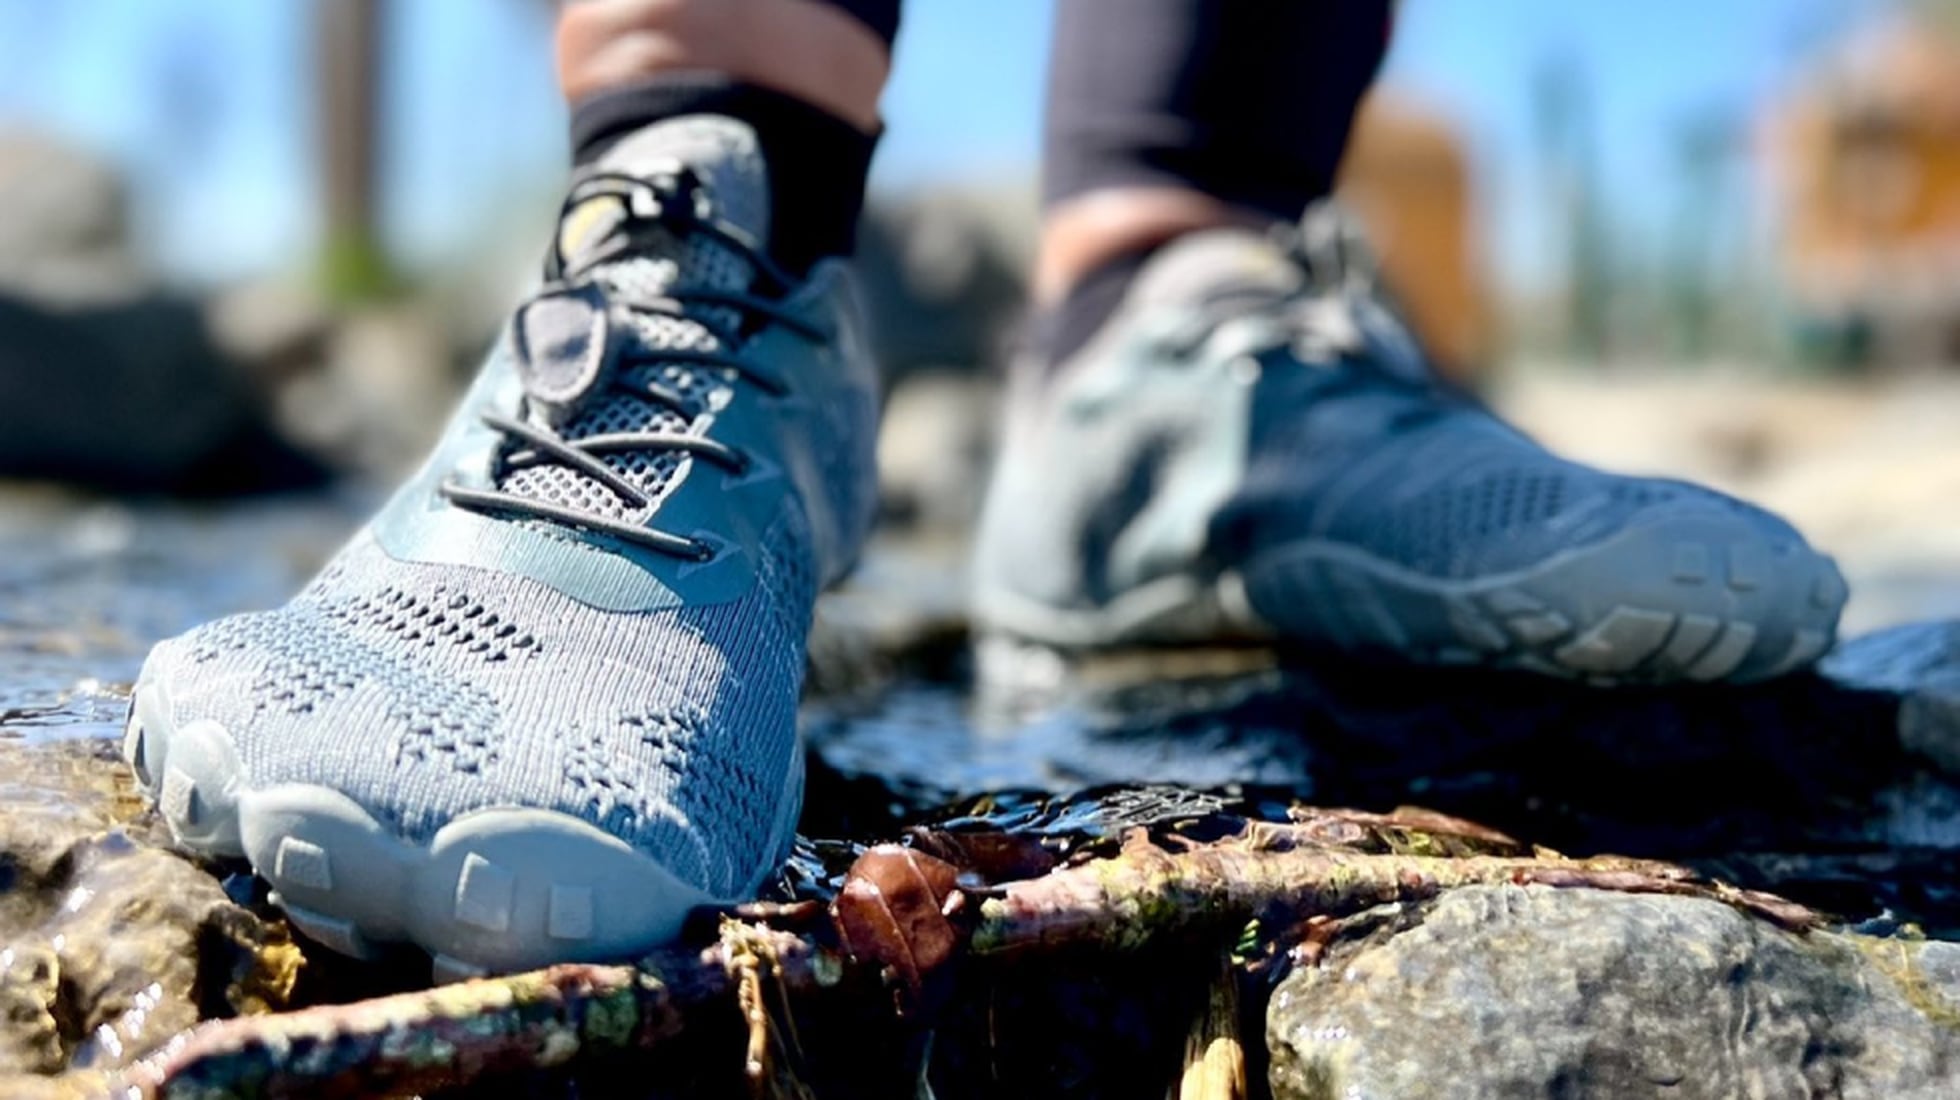 Qué es el calzado barefoot y cuáles son sus beneficios? – Cacles Barefoot